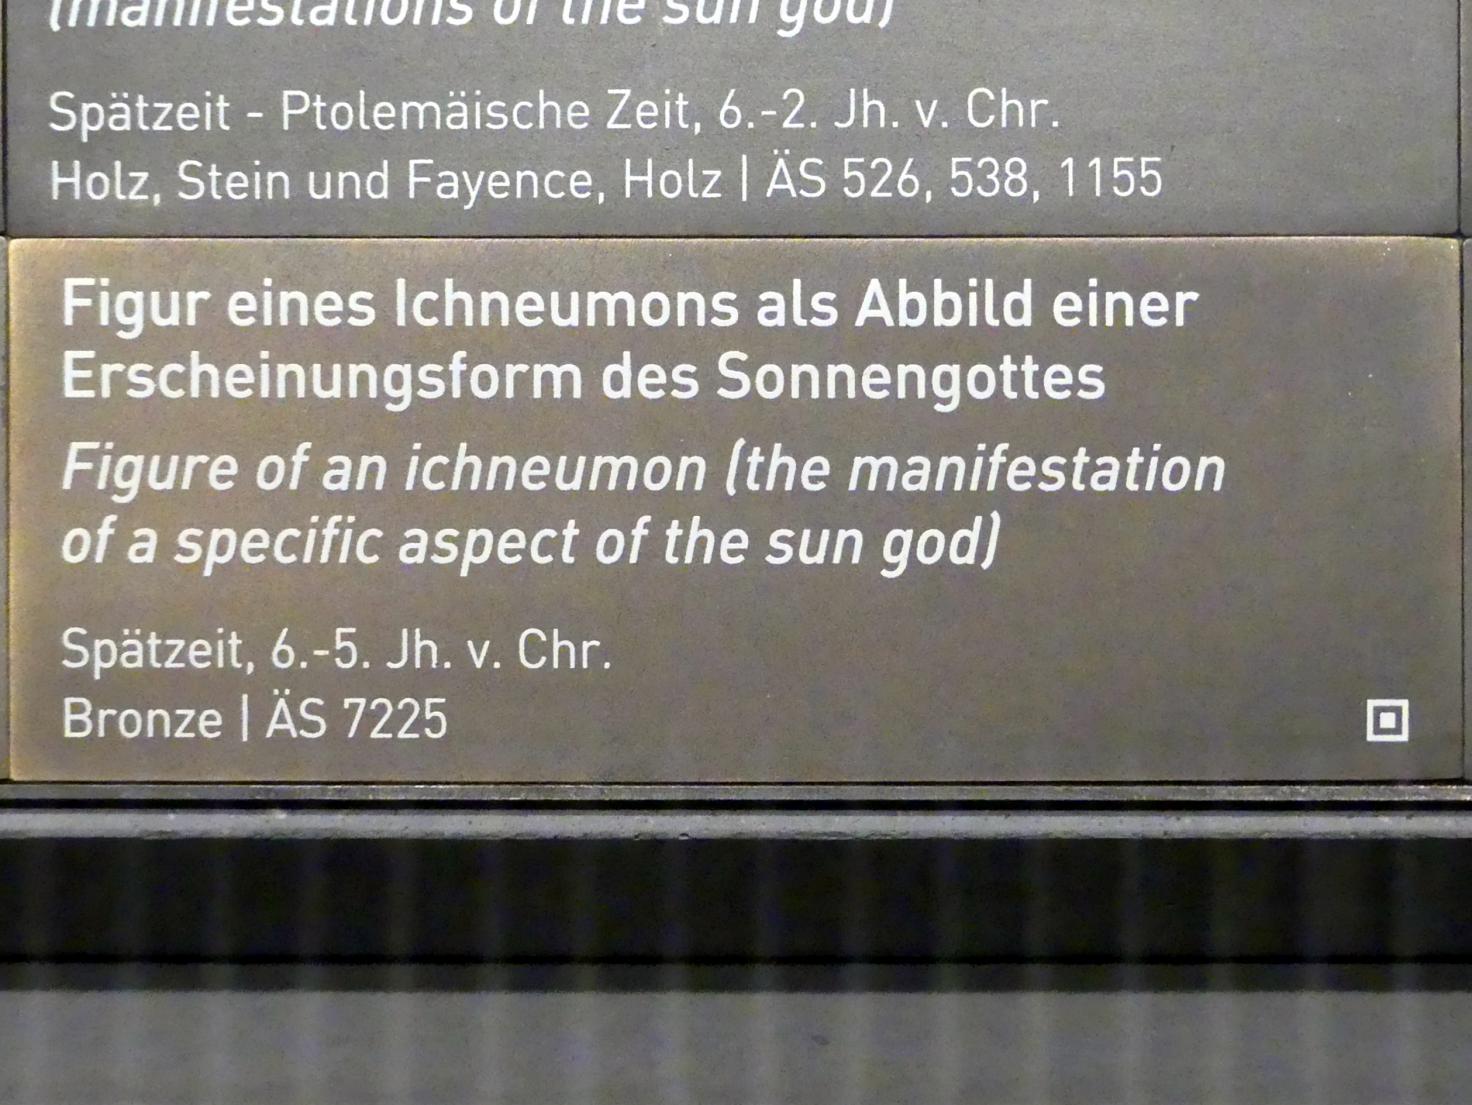 Figur eines Ichneumons als Abbild einer Erscheinungsform des Sonnengottes, Spätzeit, 360 - 342 v. Chr., 600 - 400 v. Chr., Bild 3/3